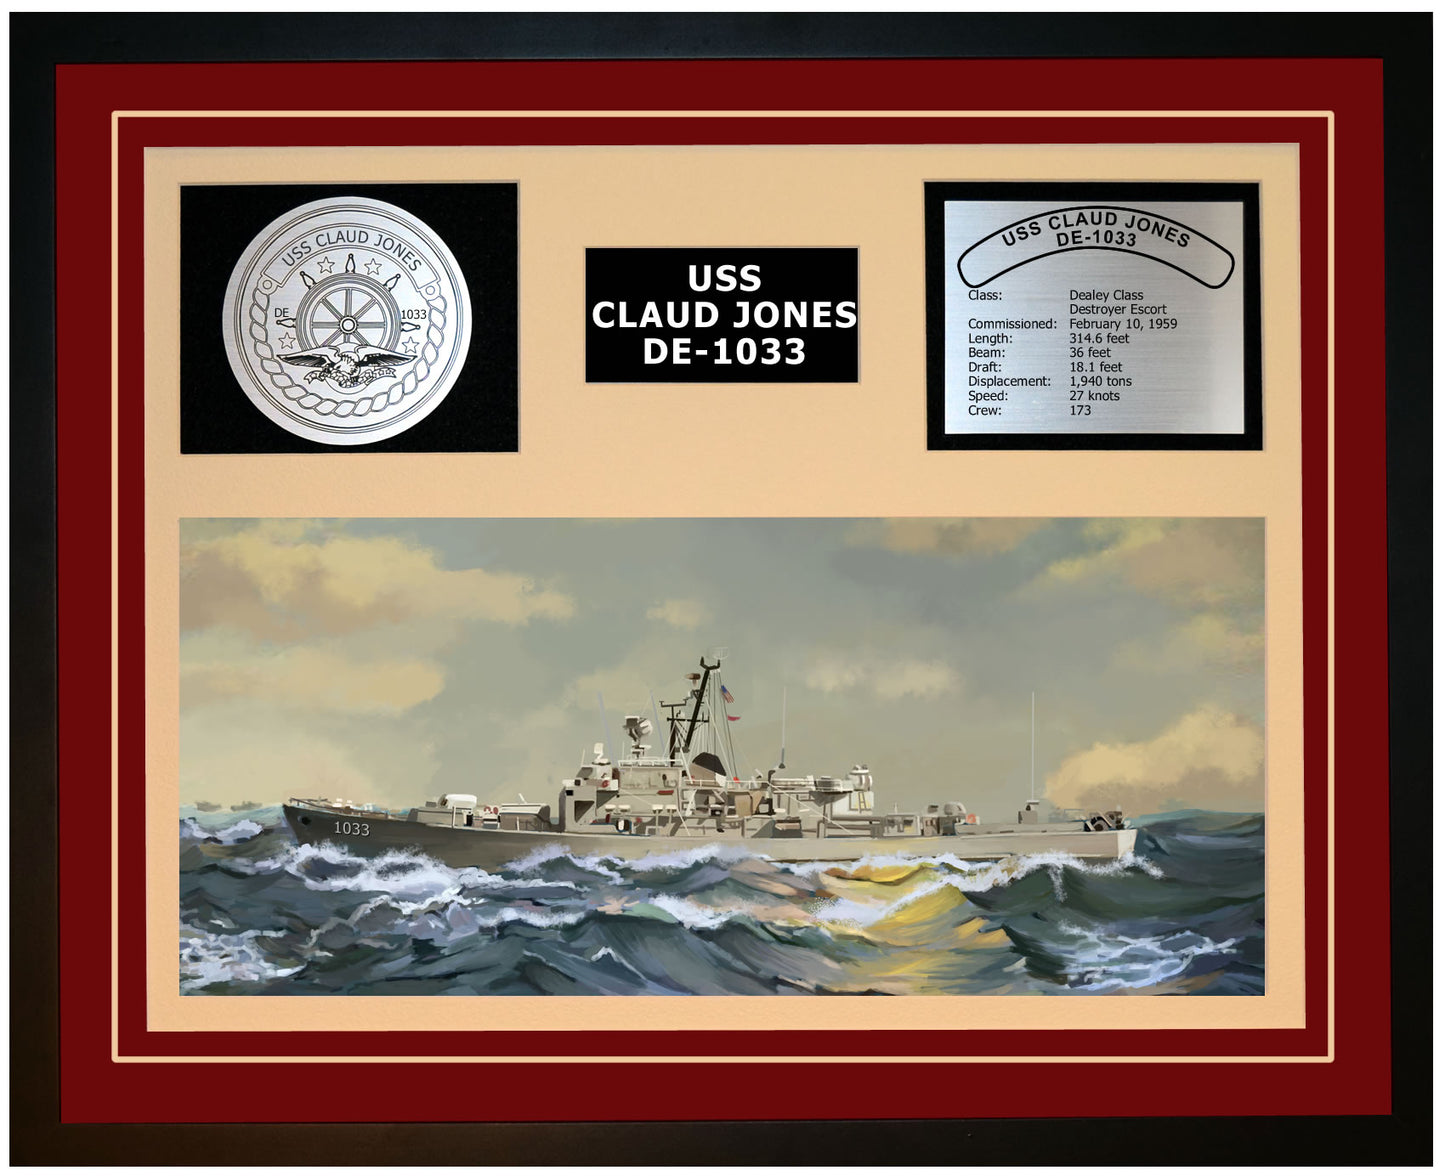 USS CLAUD JONES DE-1033 Framed Navy Ship Display Burgundy